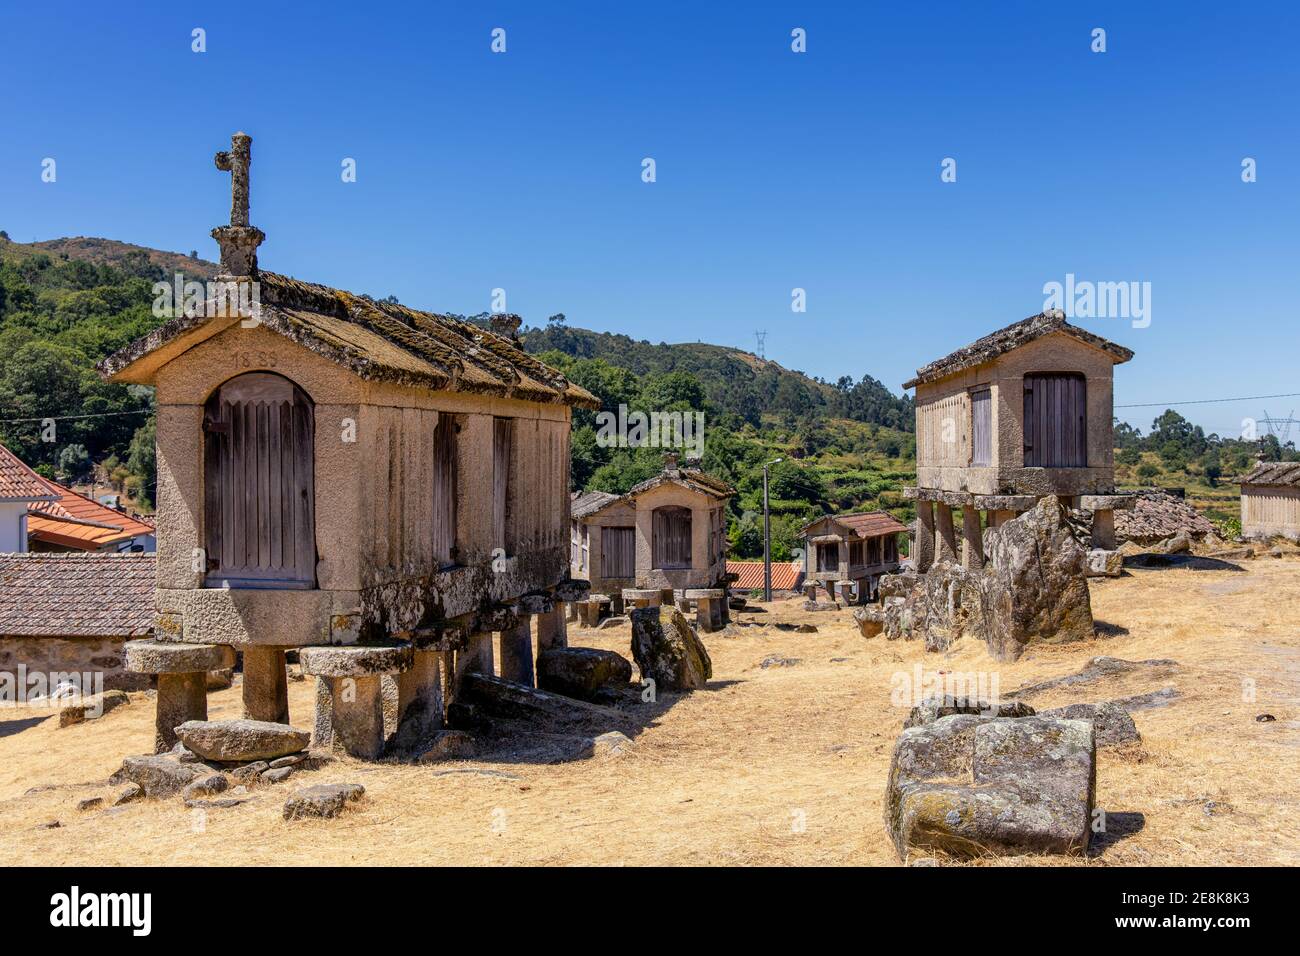 Traditionelle Scheunen auf Stelzen - Espigueiros - Nationalpark Peneda Gerês, Lindoso, Provinz Minho, Portugal, Europa Stockfoto